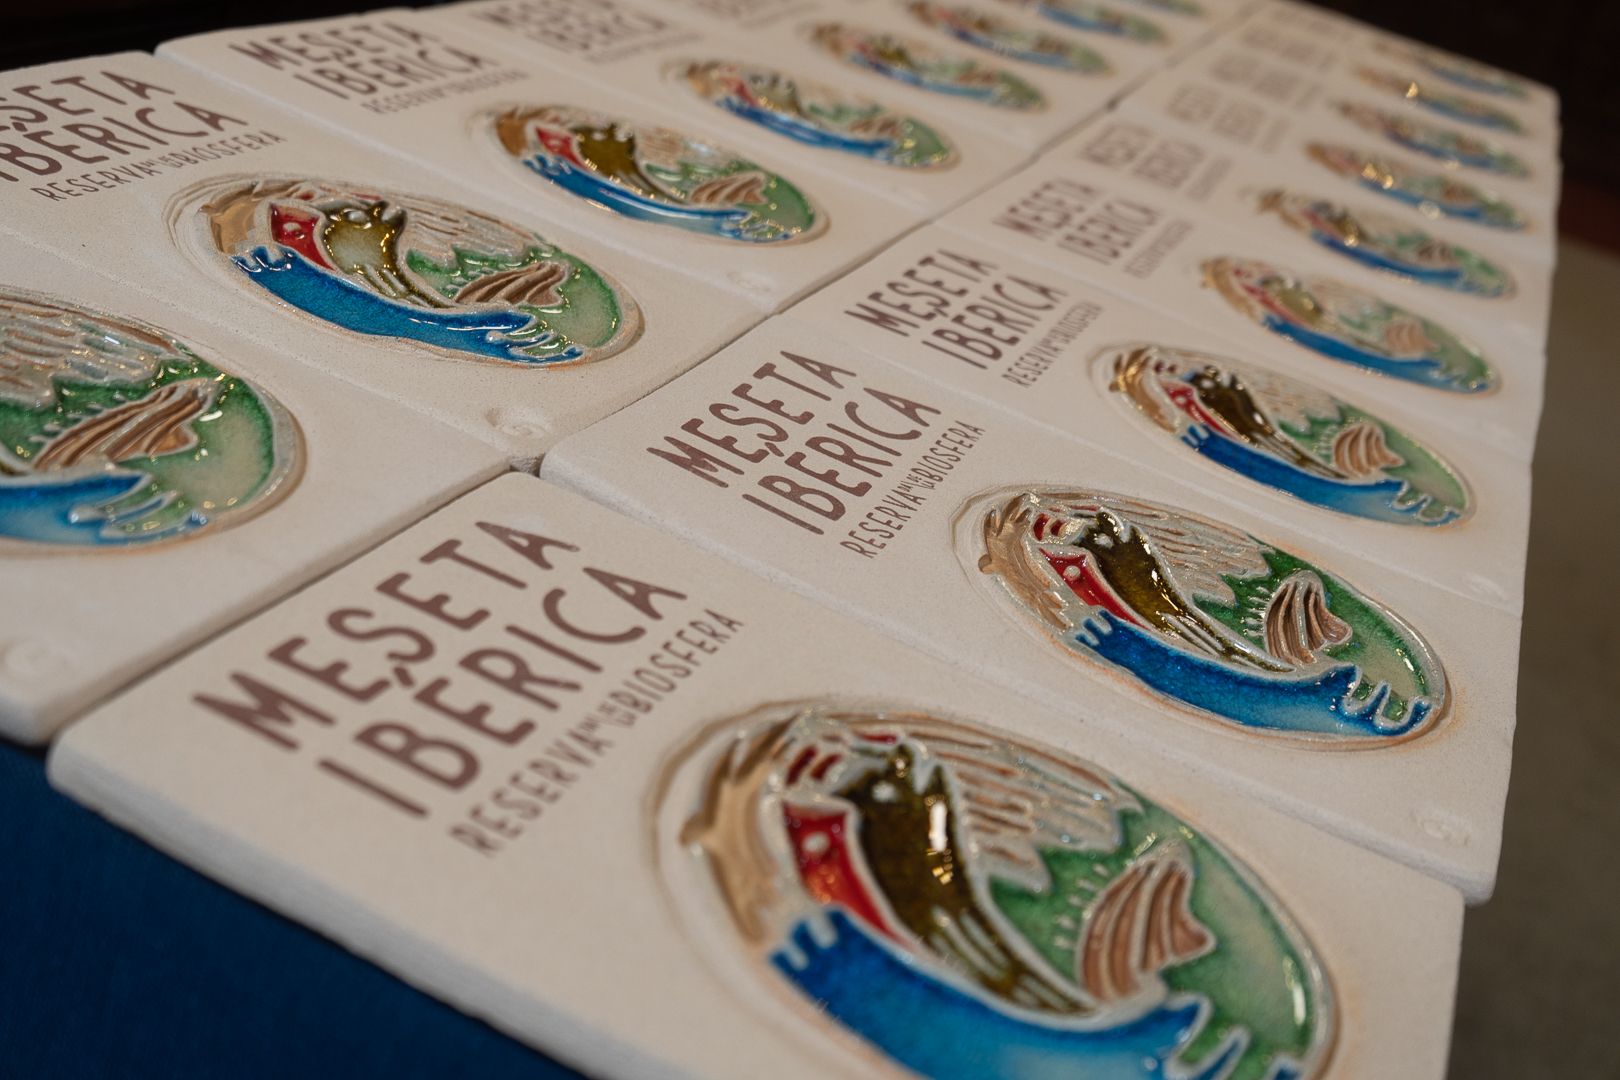 GALERÍA | Así ha sido la entrega de placas a las empresas con el distintivo Meseta Ibérica en Zamora